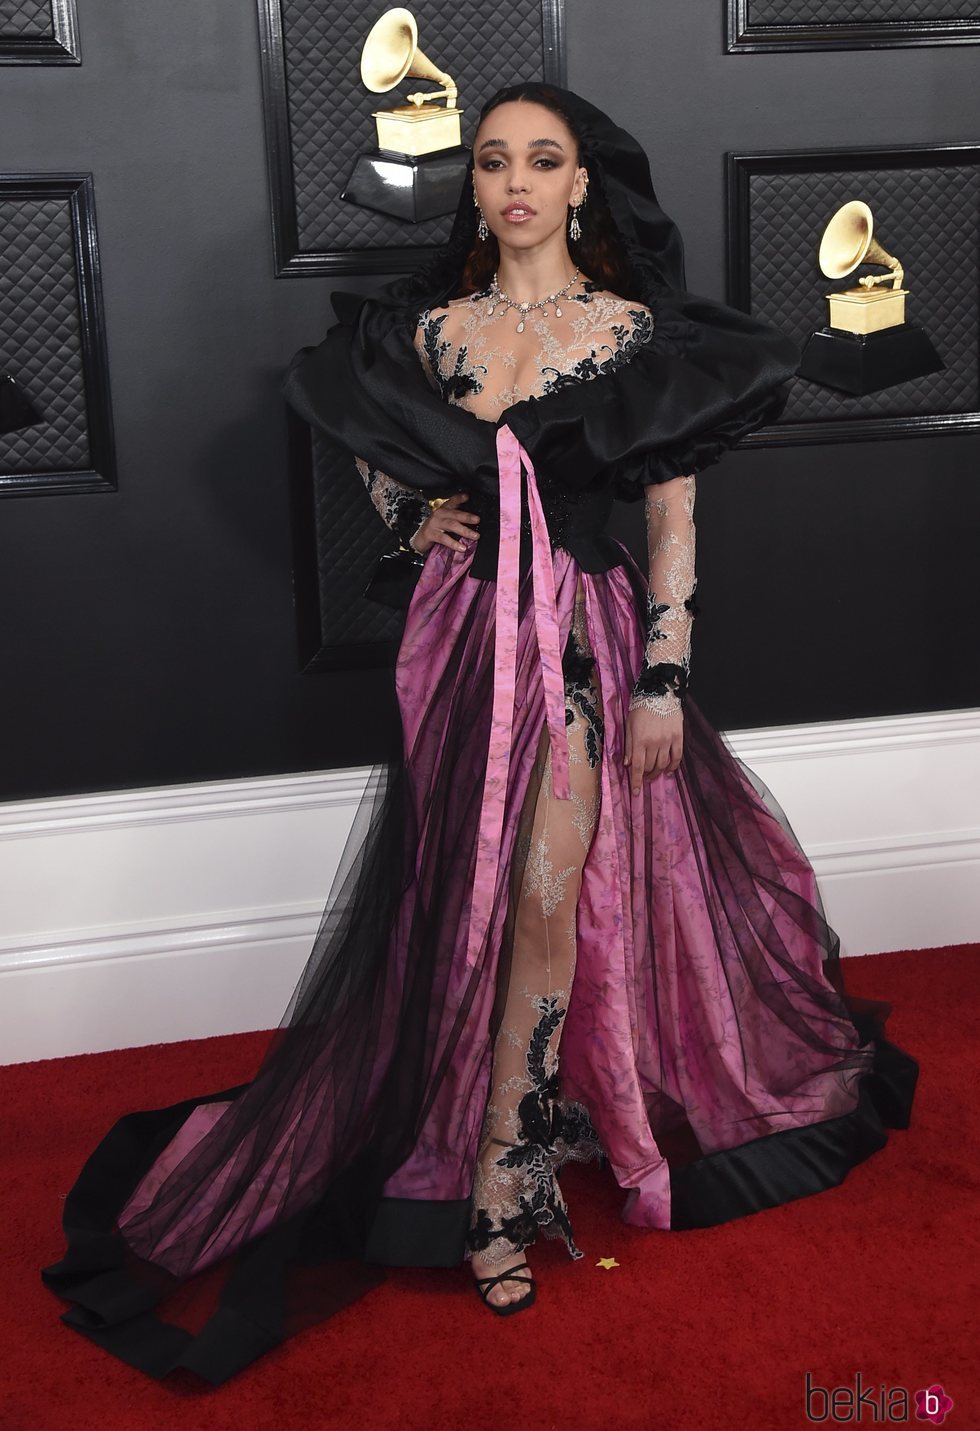 FKA Twigs con un vestido de Edmarler en los Grammy 2020